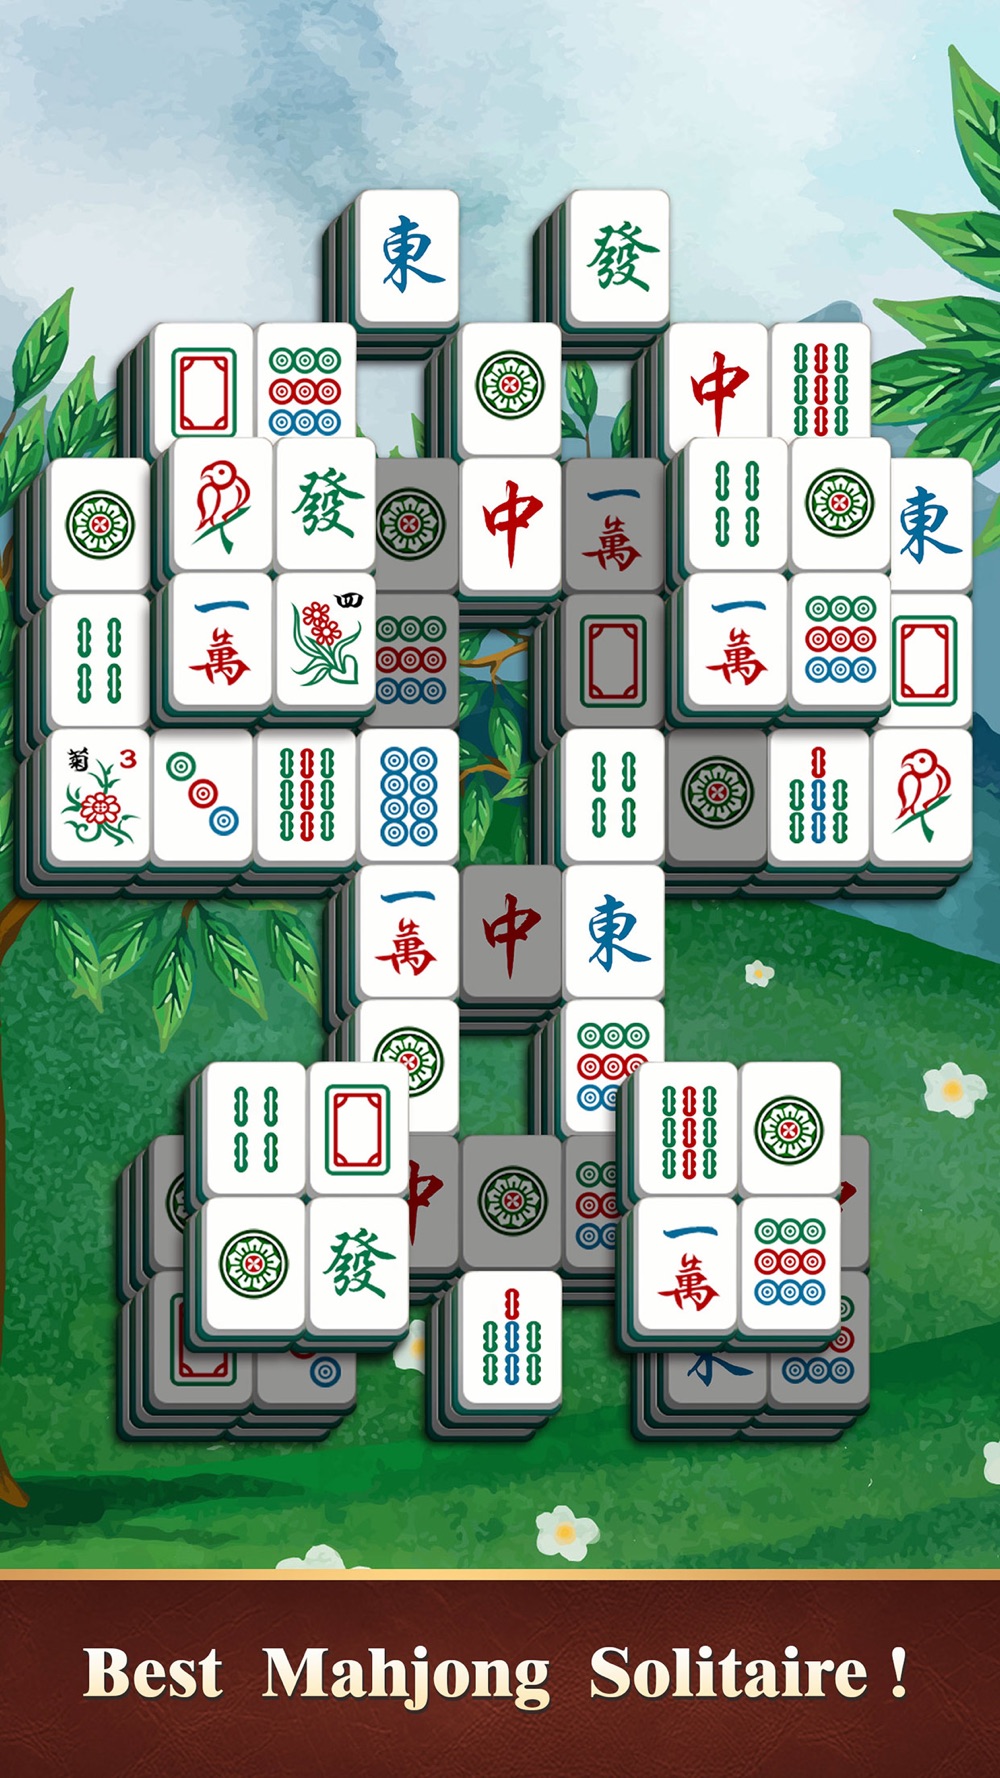 Mahjong Tile Games App